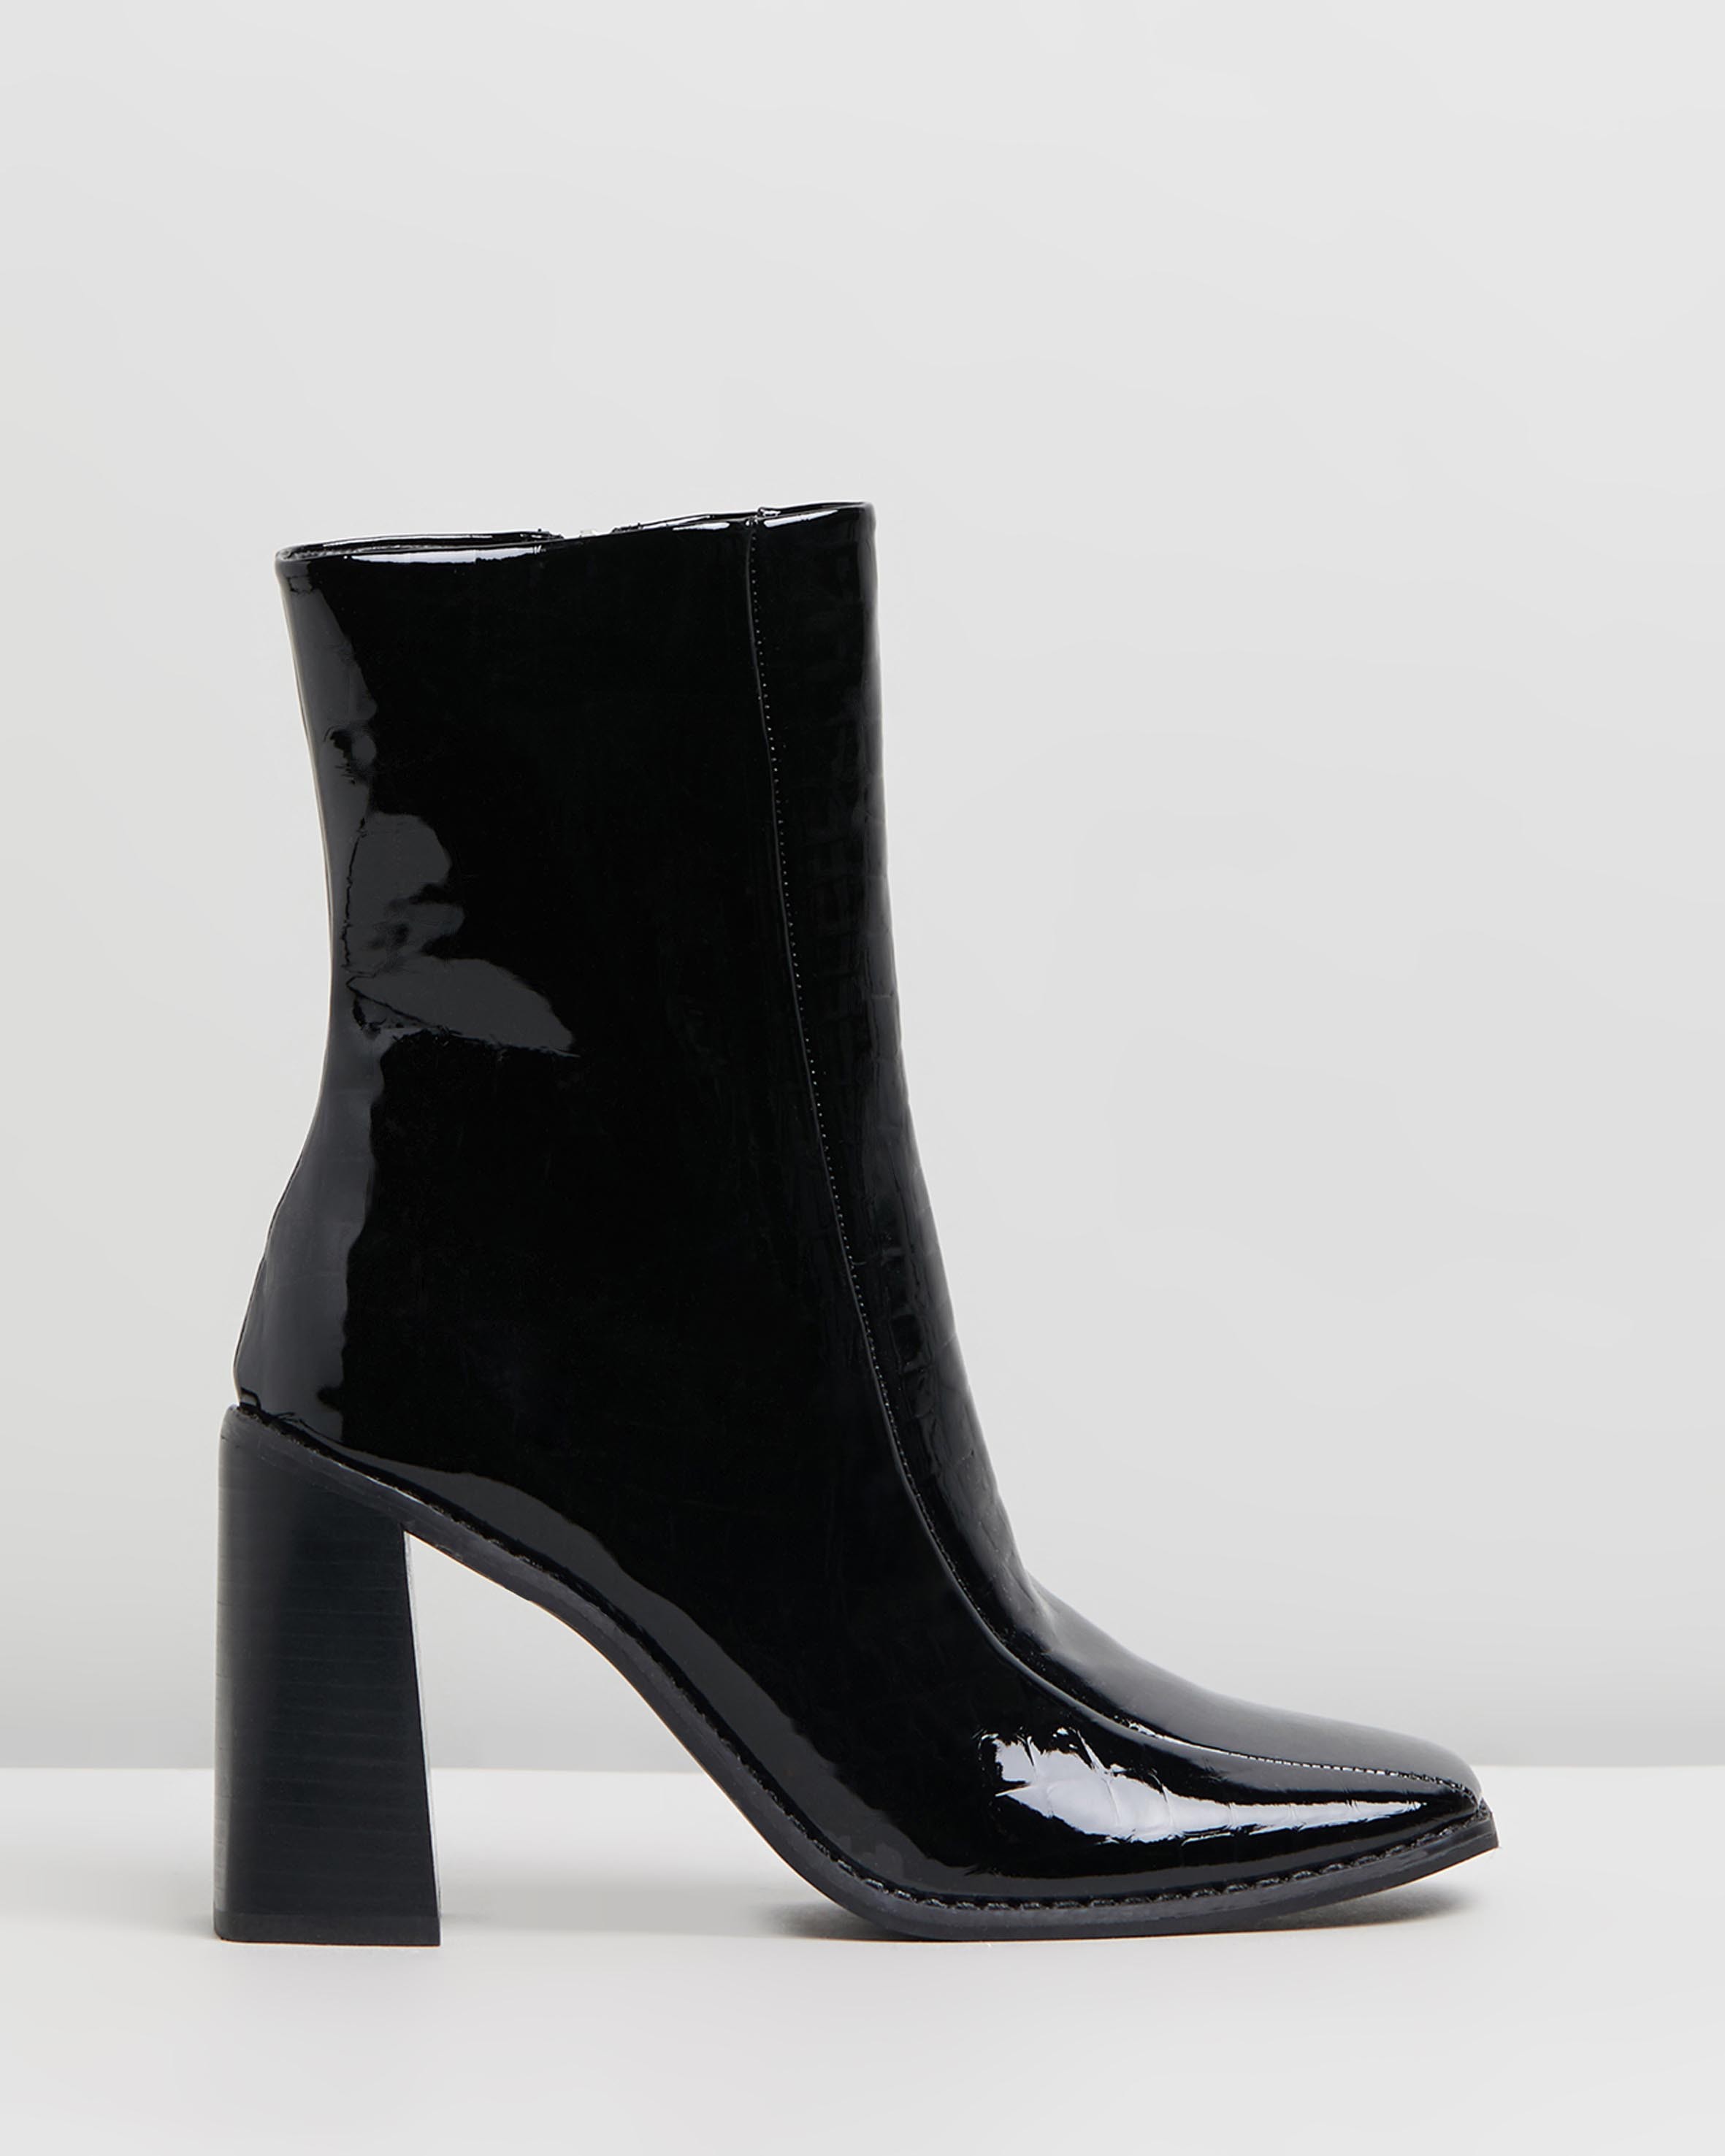 Hallie Ankle Boots Black Croc by Spurr | ShoeSales